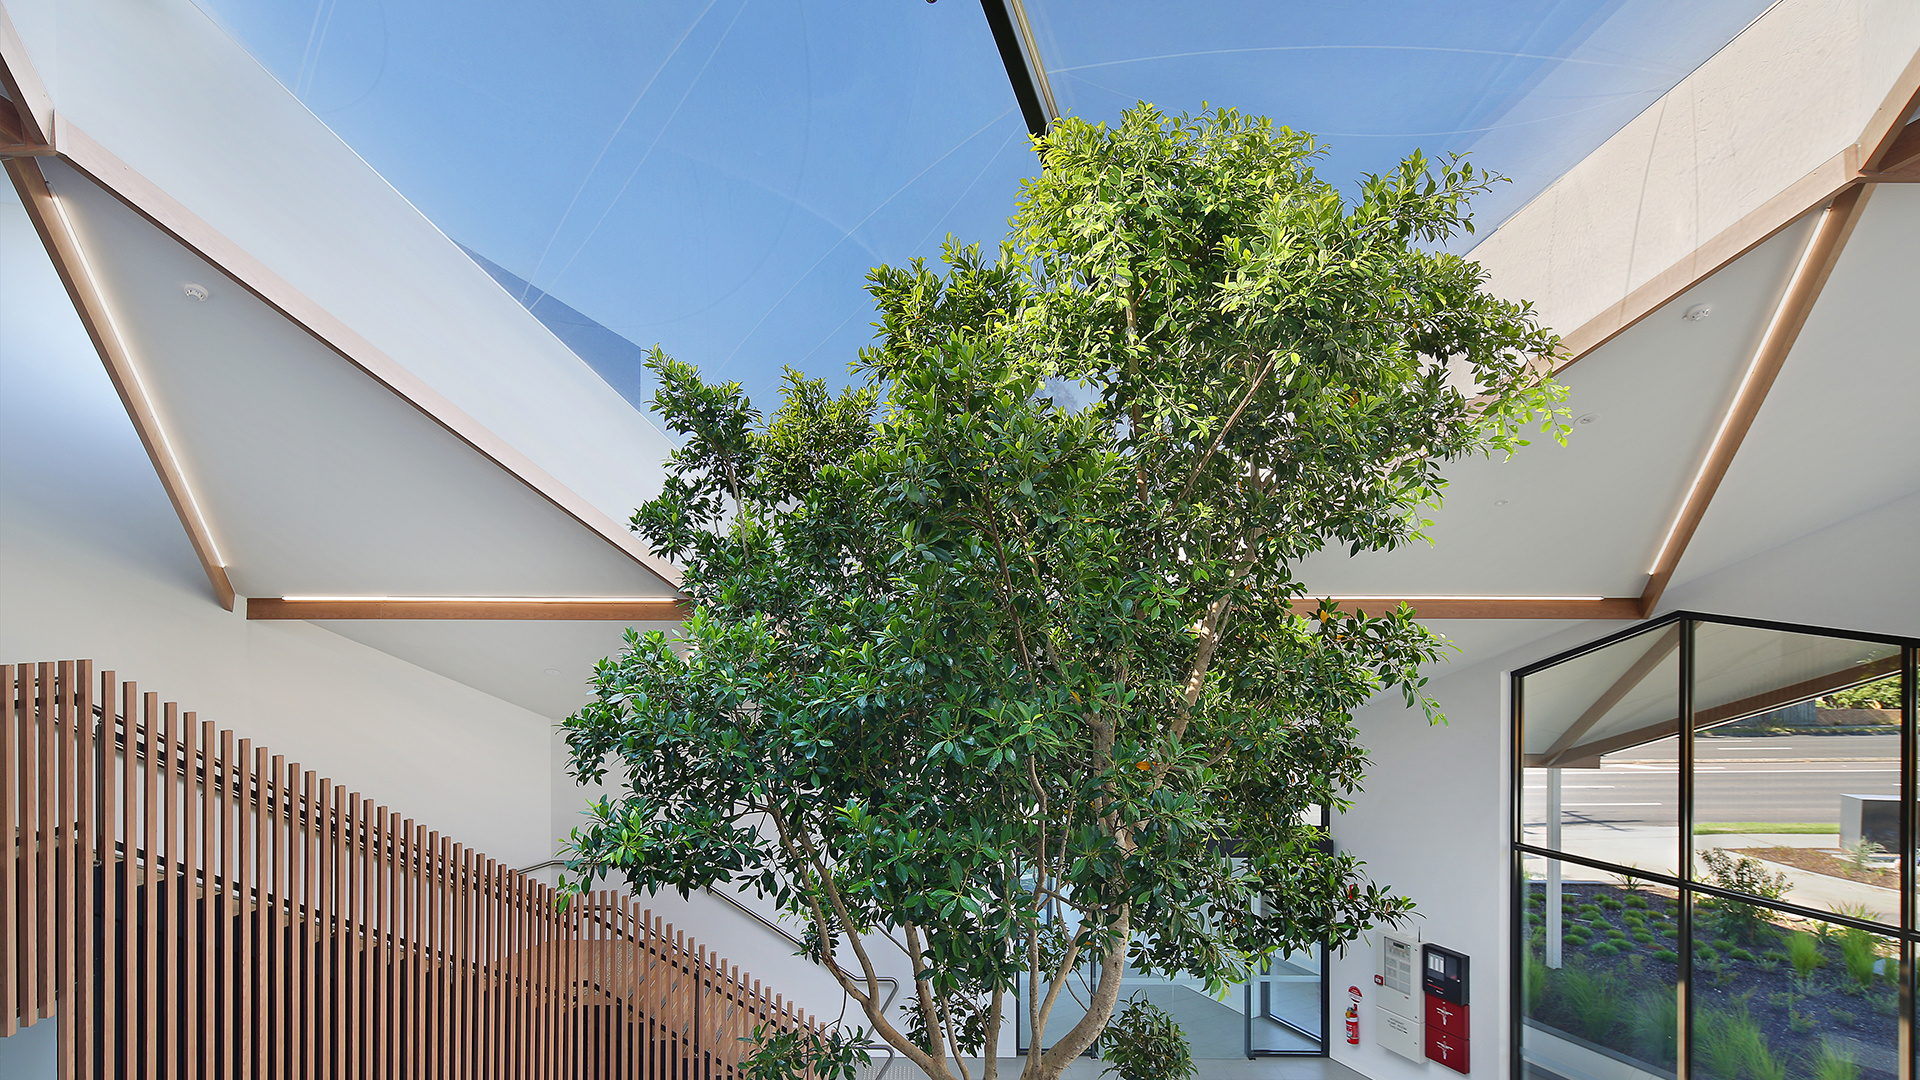  Unser Texlon® ETFE-System, eingebaut in eine leichte Stahlkonstruktion, lässt Pflanzen gedeihen - dank einer hervorragenden UV-Transparenz der ETFE-Kissen.